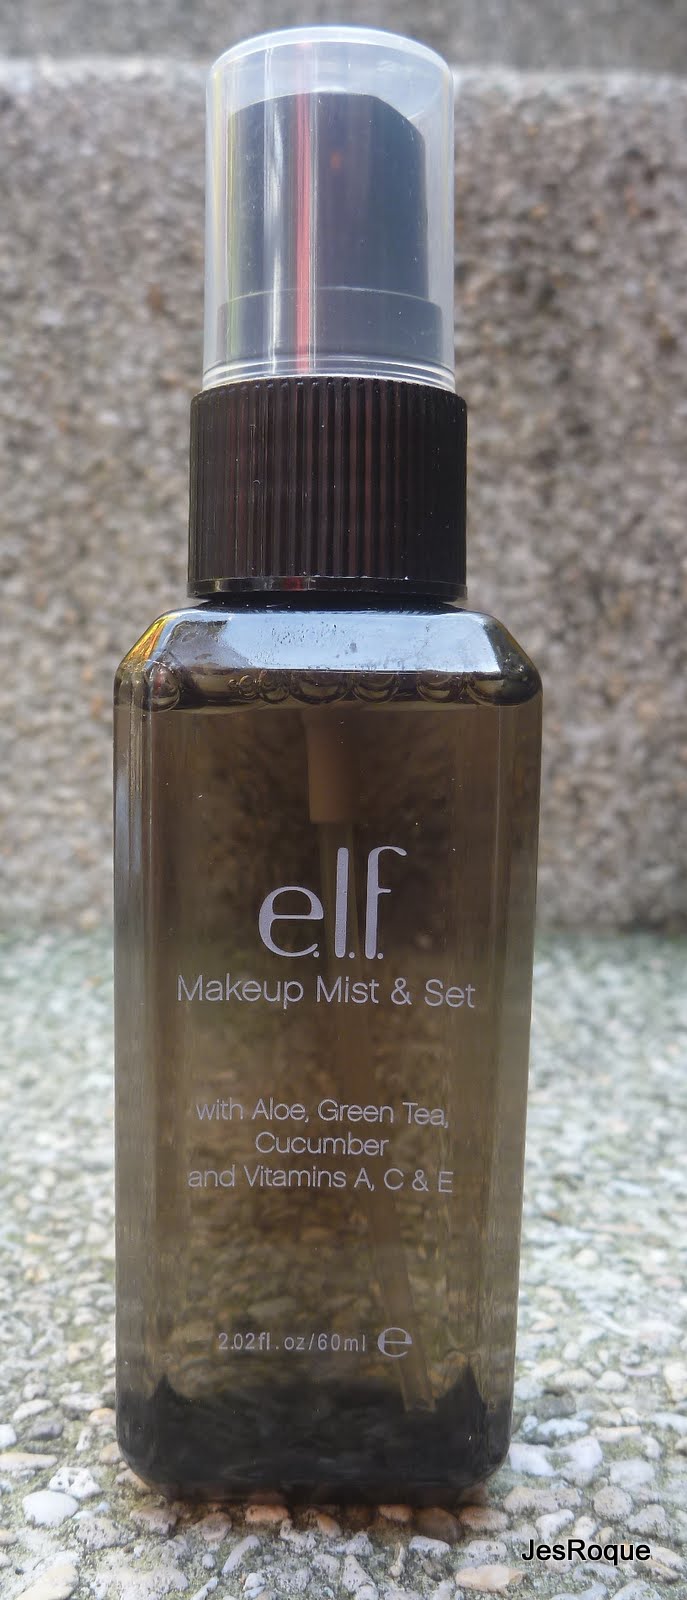 Online mist elf review makeup online